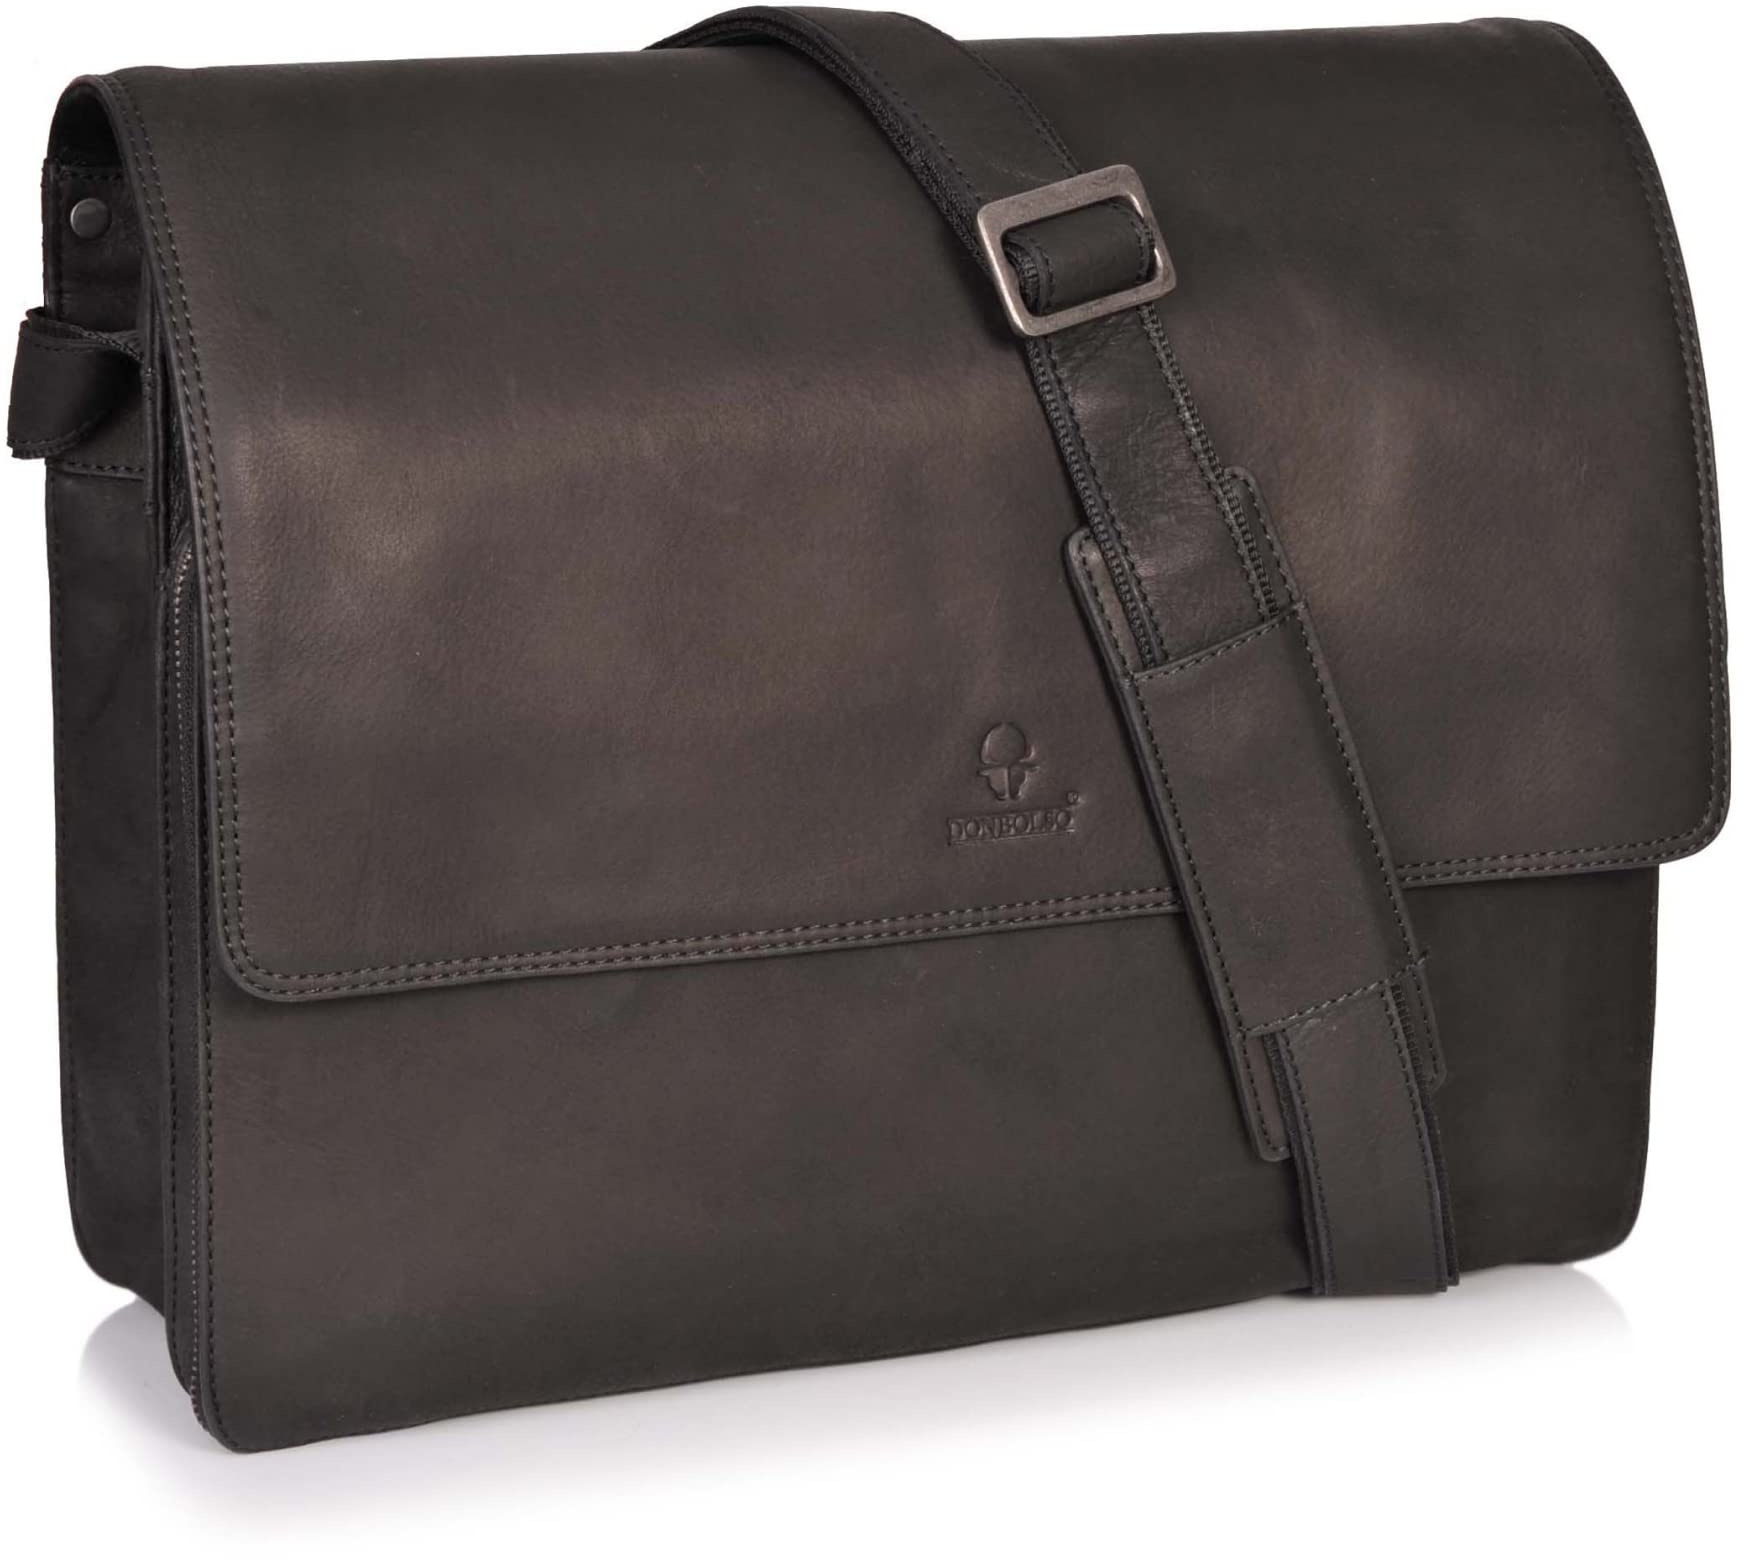 DONBOLSO New York Messenger Bag aus Leder - Hochwertige Laptop Umhängetasche aus Leder - Hochwertige Aktentasche für Damen & Herren - Business Tasche (Schwarz Vintage, L)